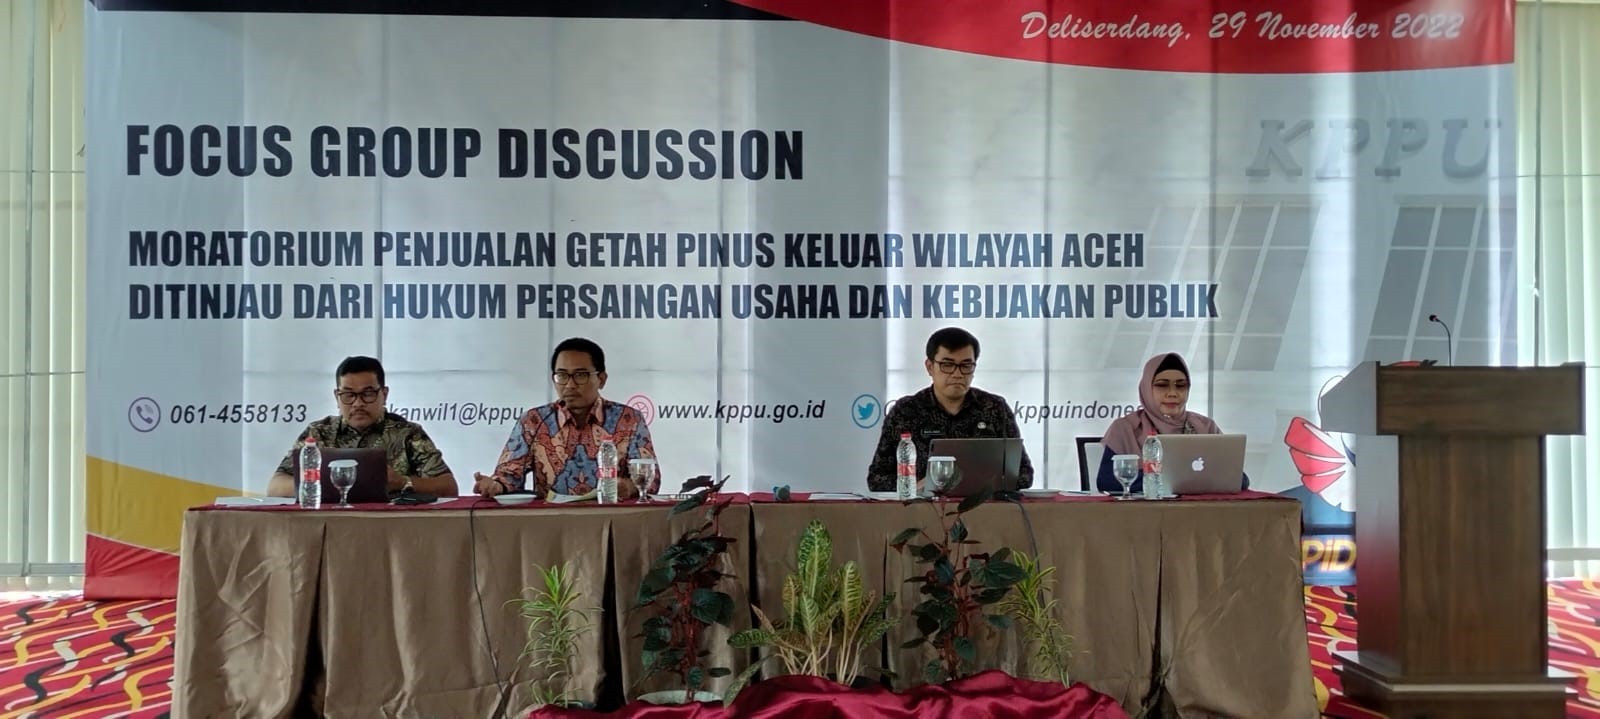 KPPU soroti kebijakan moratorium penjualan getah pinus keluar Aceh